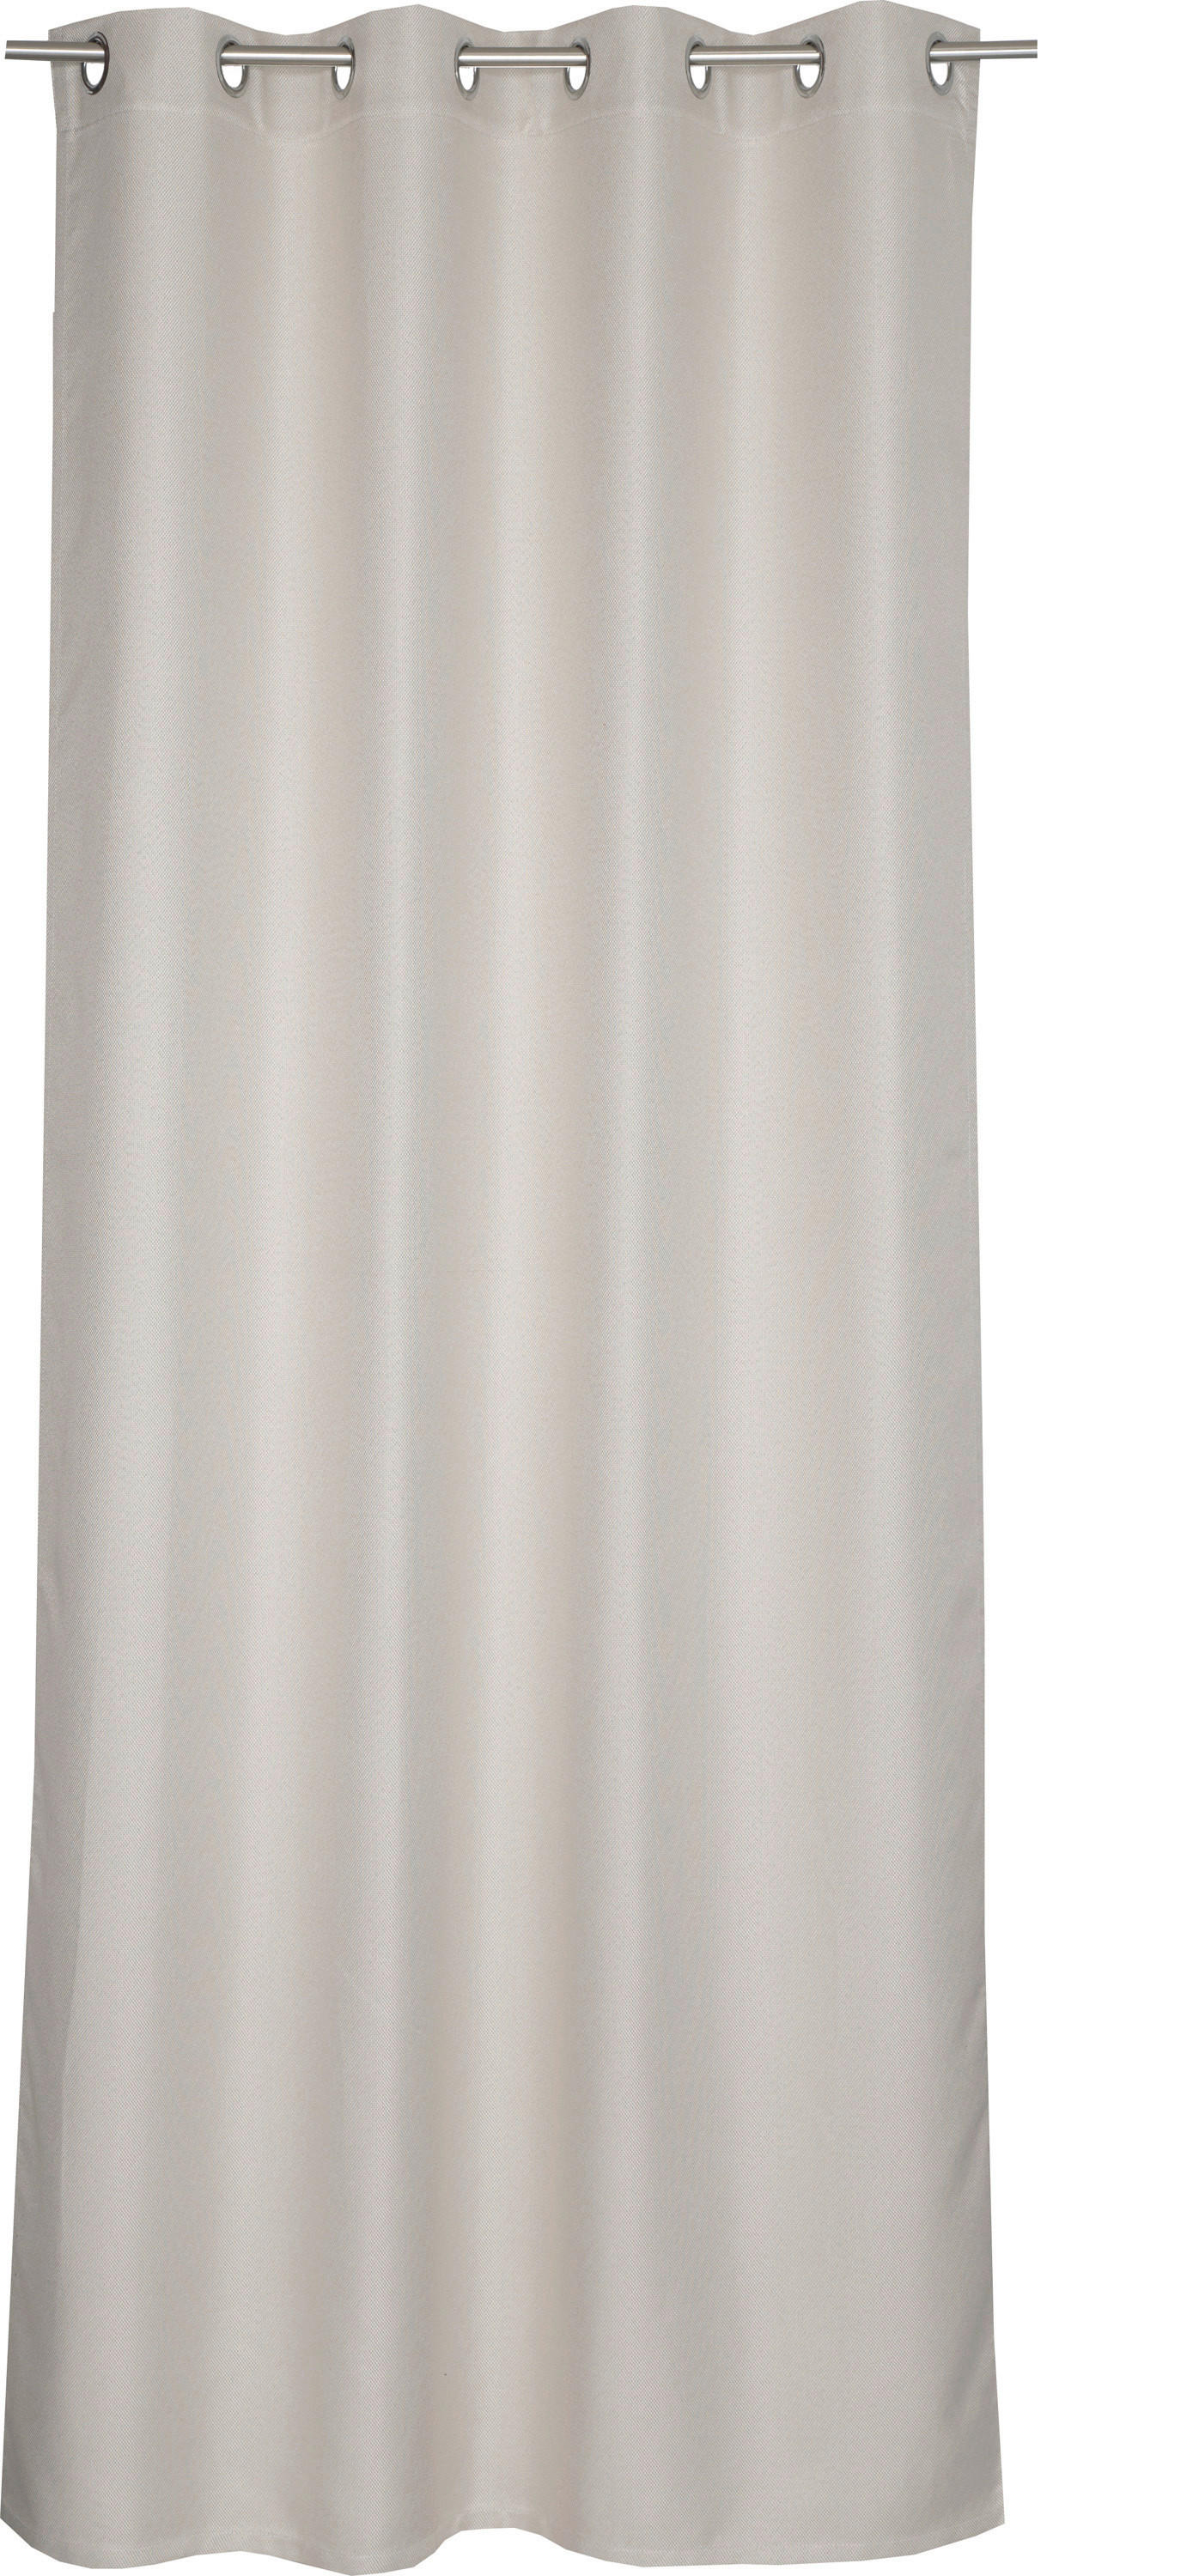 ÖSENSCHAL Opaco black-out (lichtundurchlässig) 140/250 cm   - Beige, Basics, Textil (140/250cm) - Schöner Wohnen